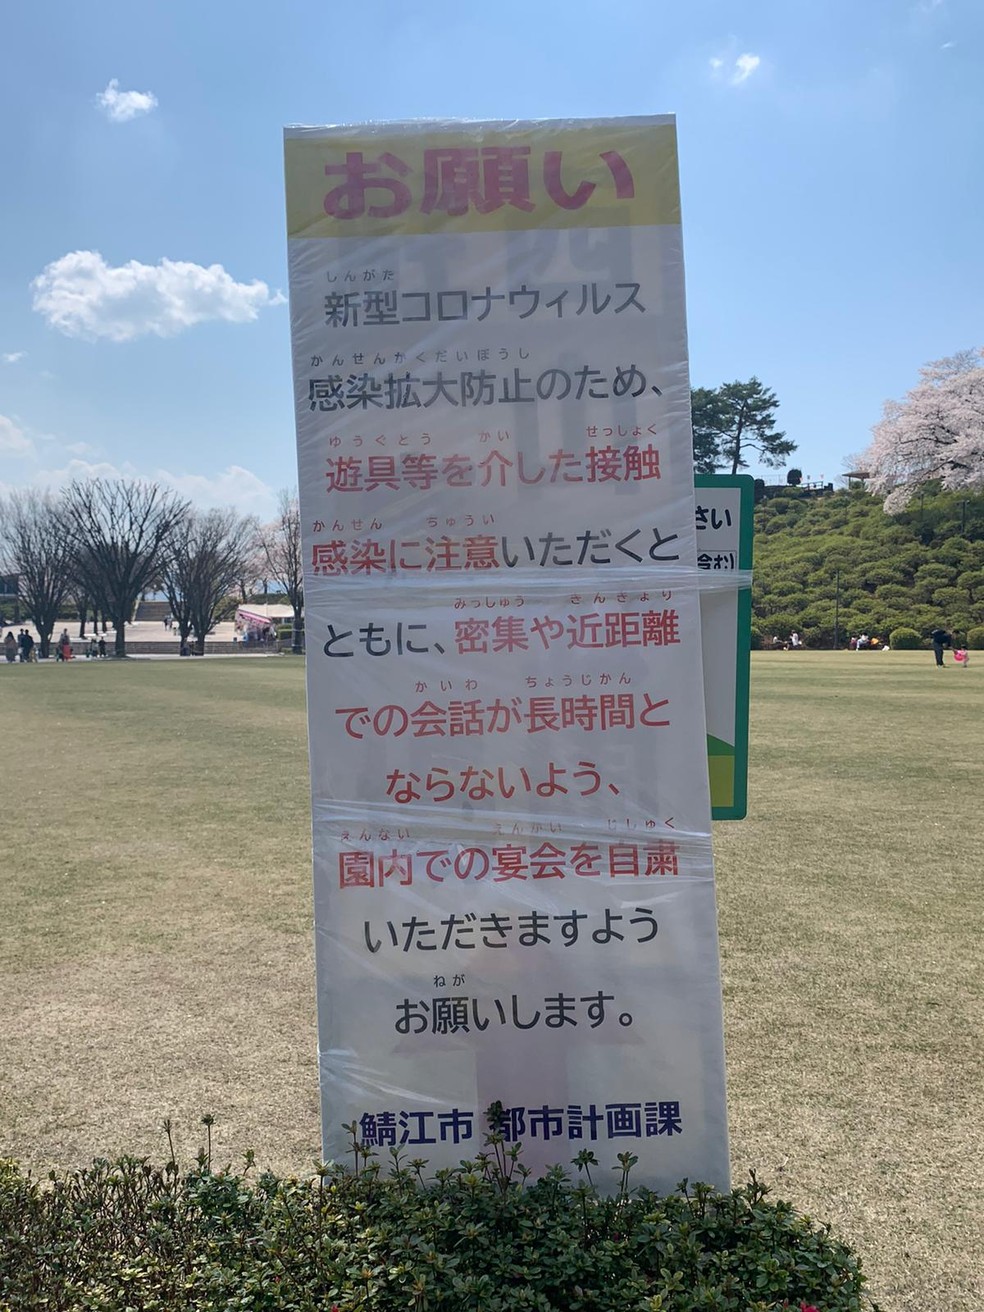 Cartaz no parque da cidade de Sabae, no Japão, informa sobre cuidados contra o coronavírus. Ao fundo cerejeiras. Neste ano, governo proibiu tradicionais piqueniques sob as árvores — Foto: Divulgação/Arquivo pessoal